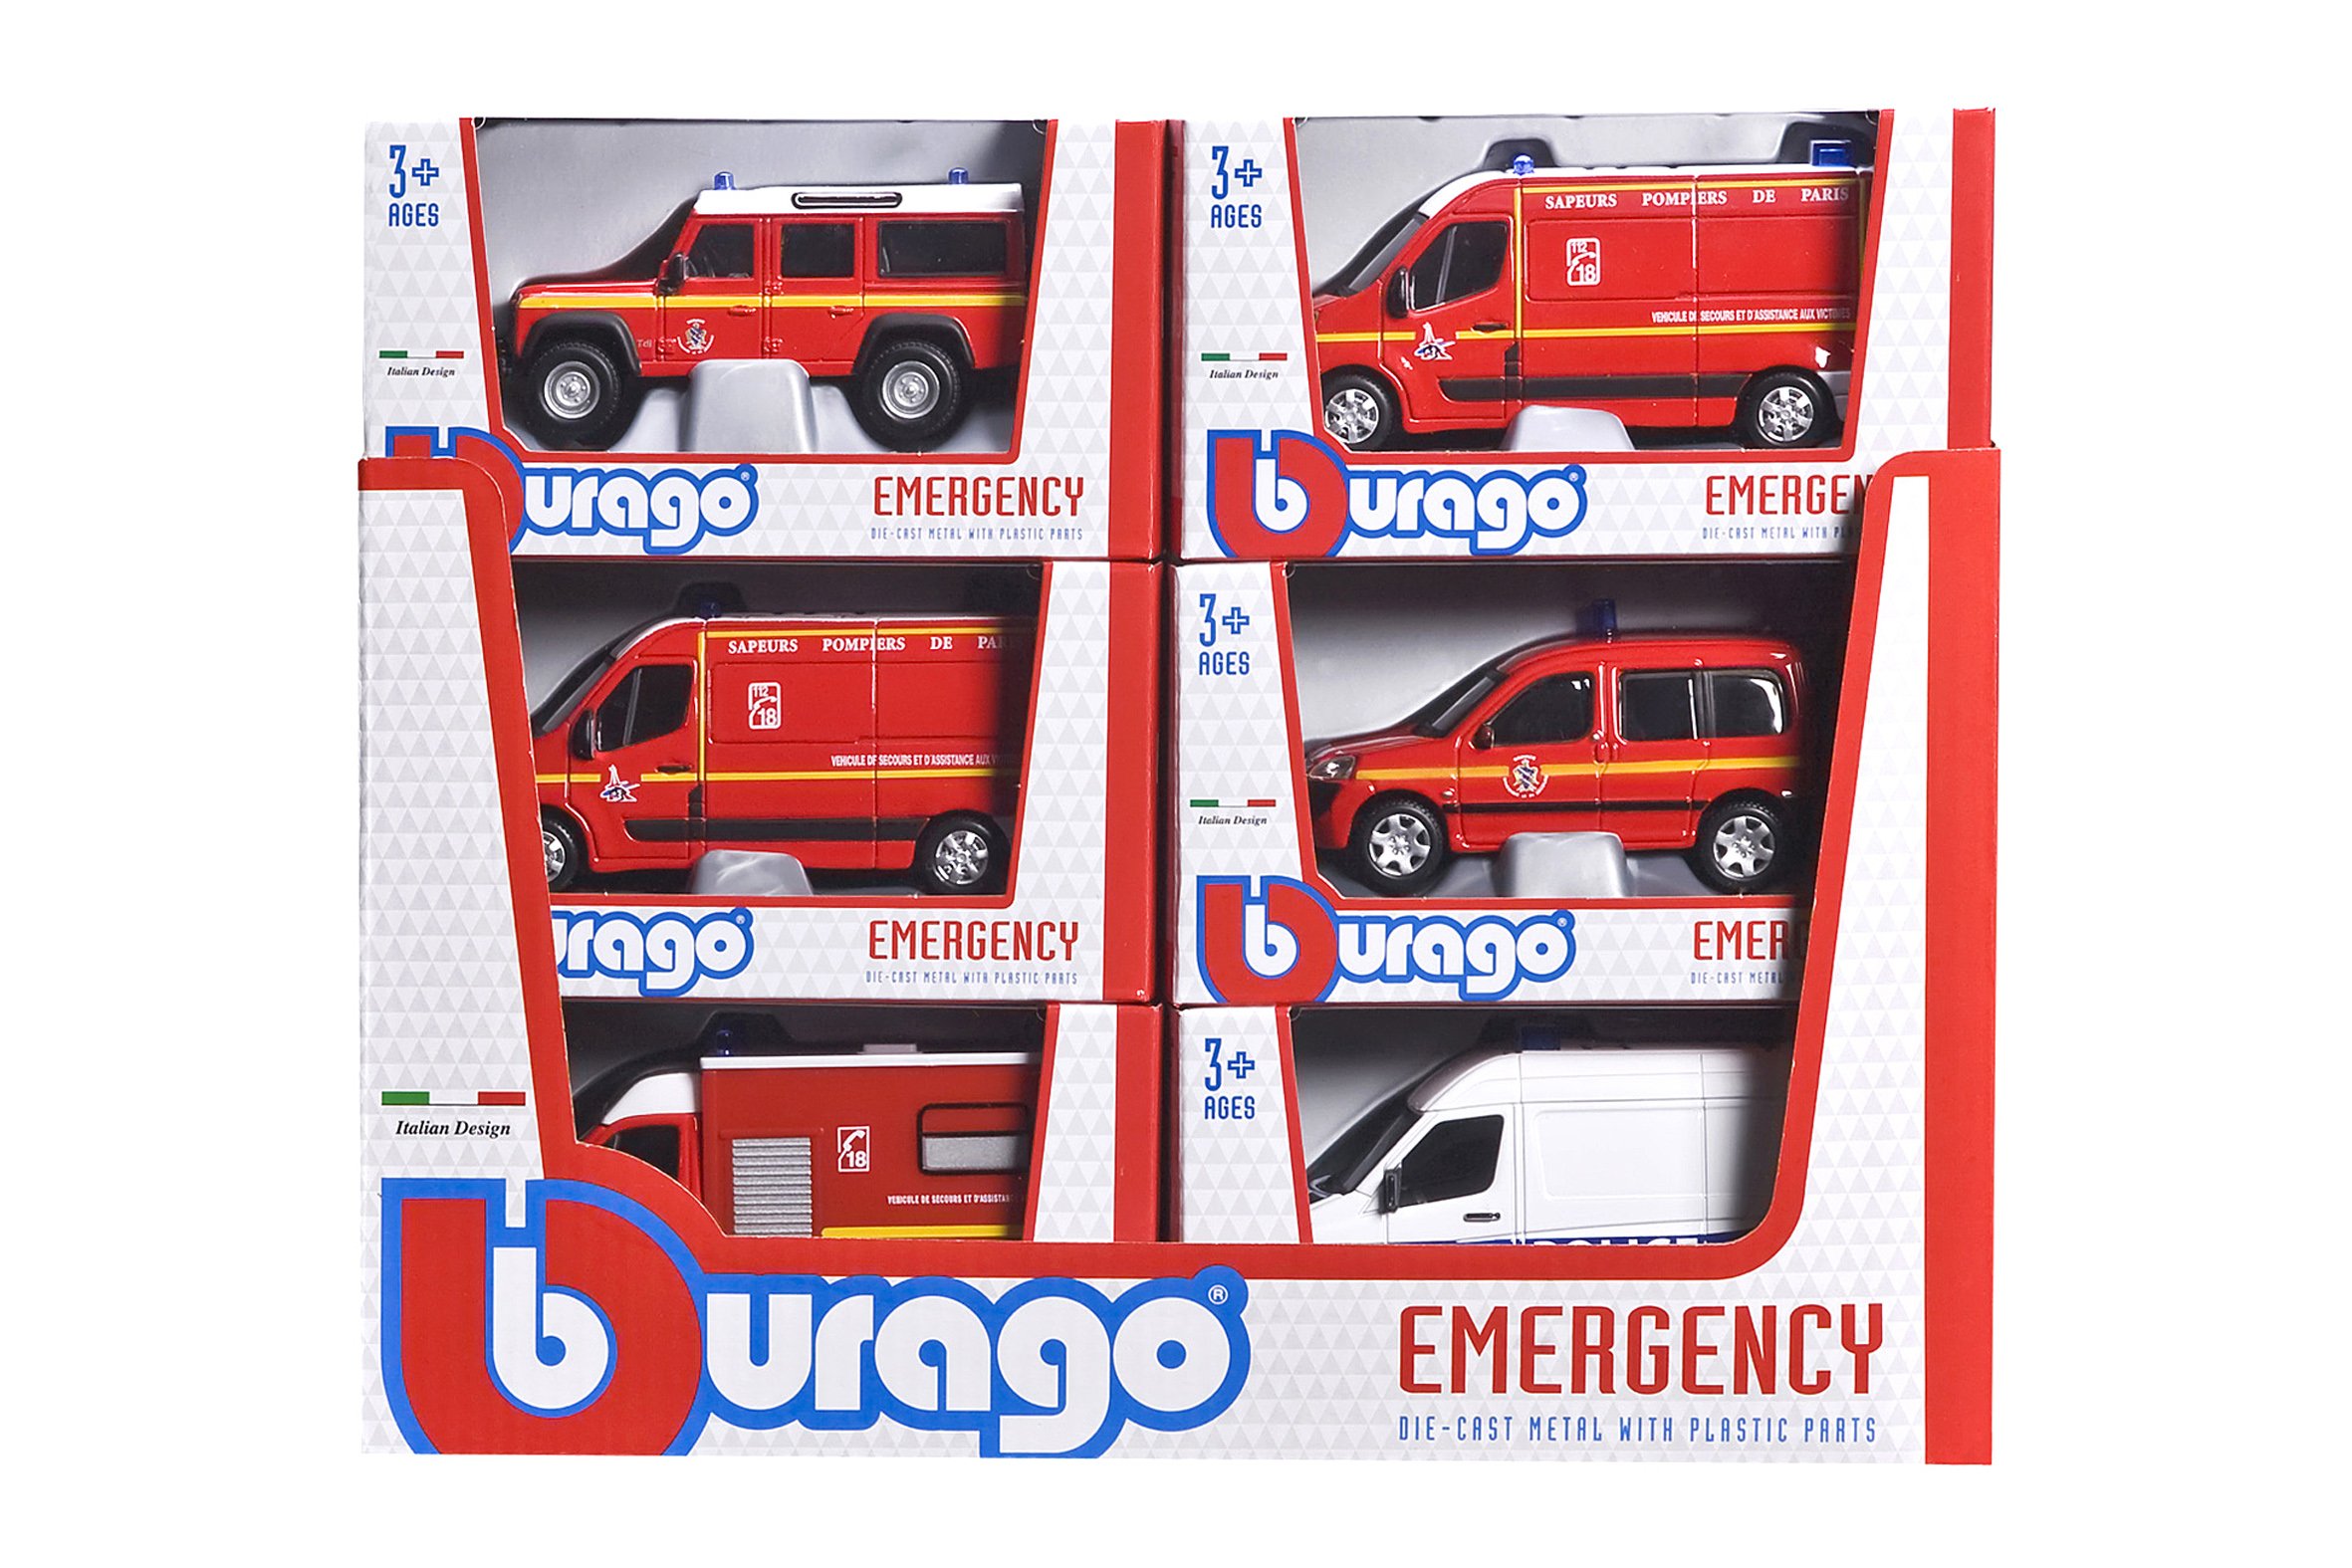 Nos véhicules d'intervention d'urgence à domicile